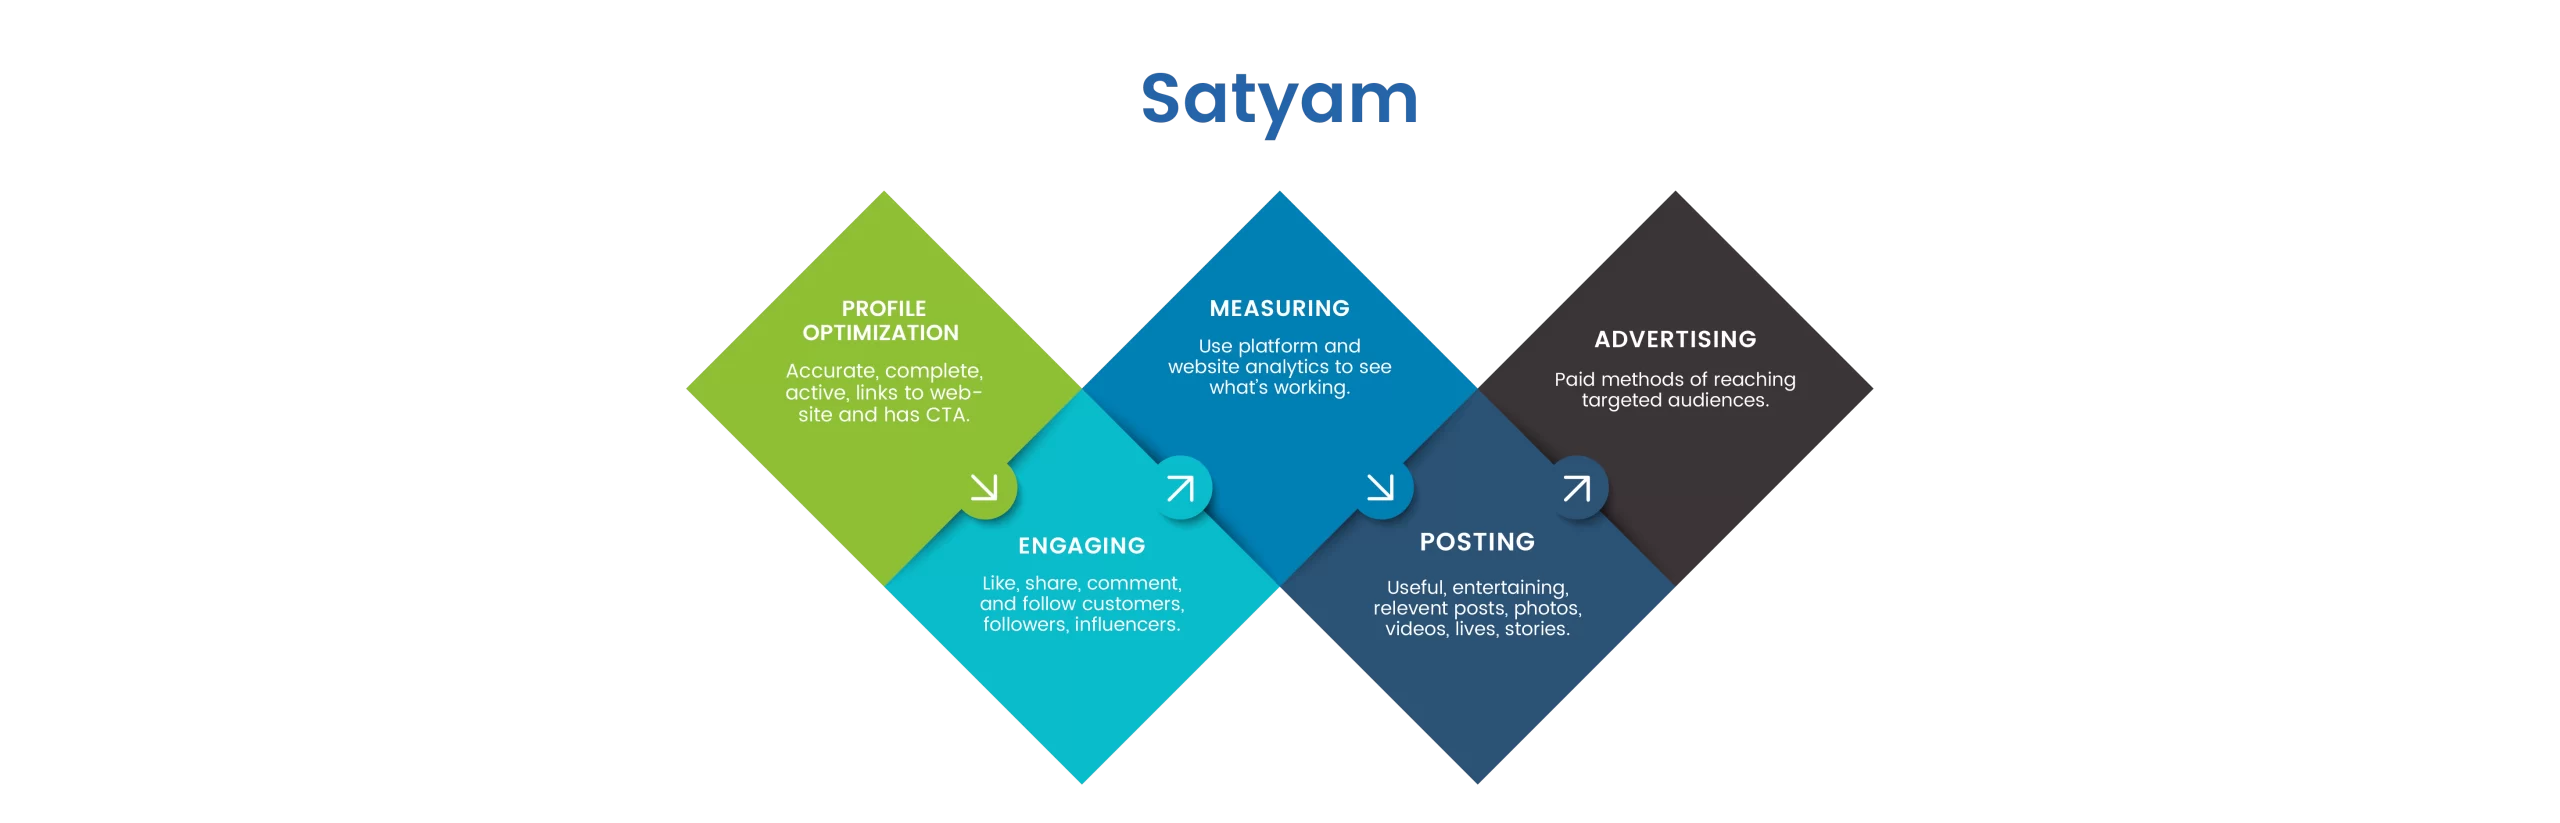 Satyam Marketing Strategy